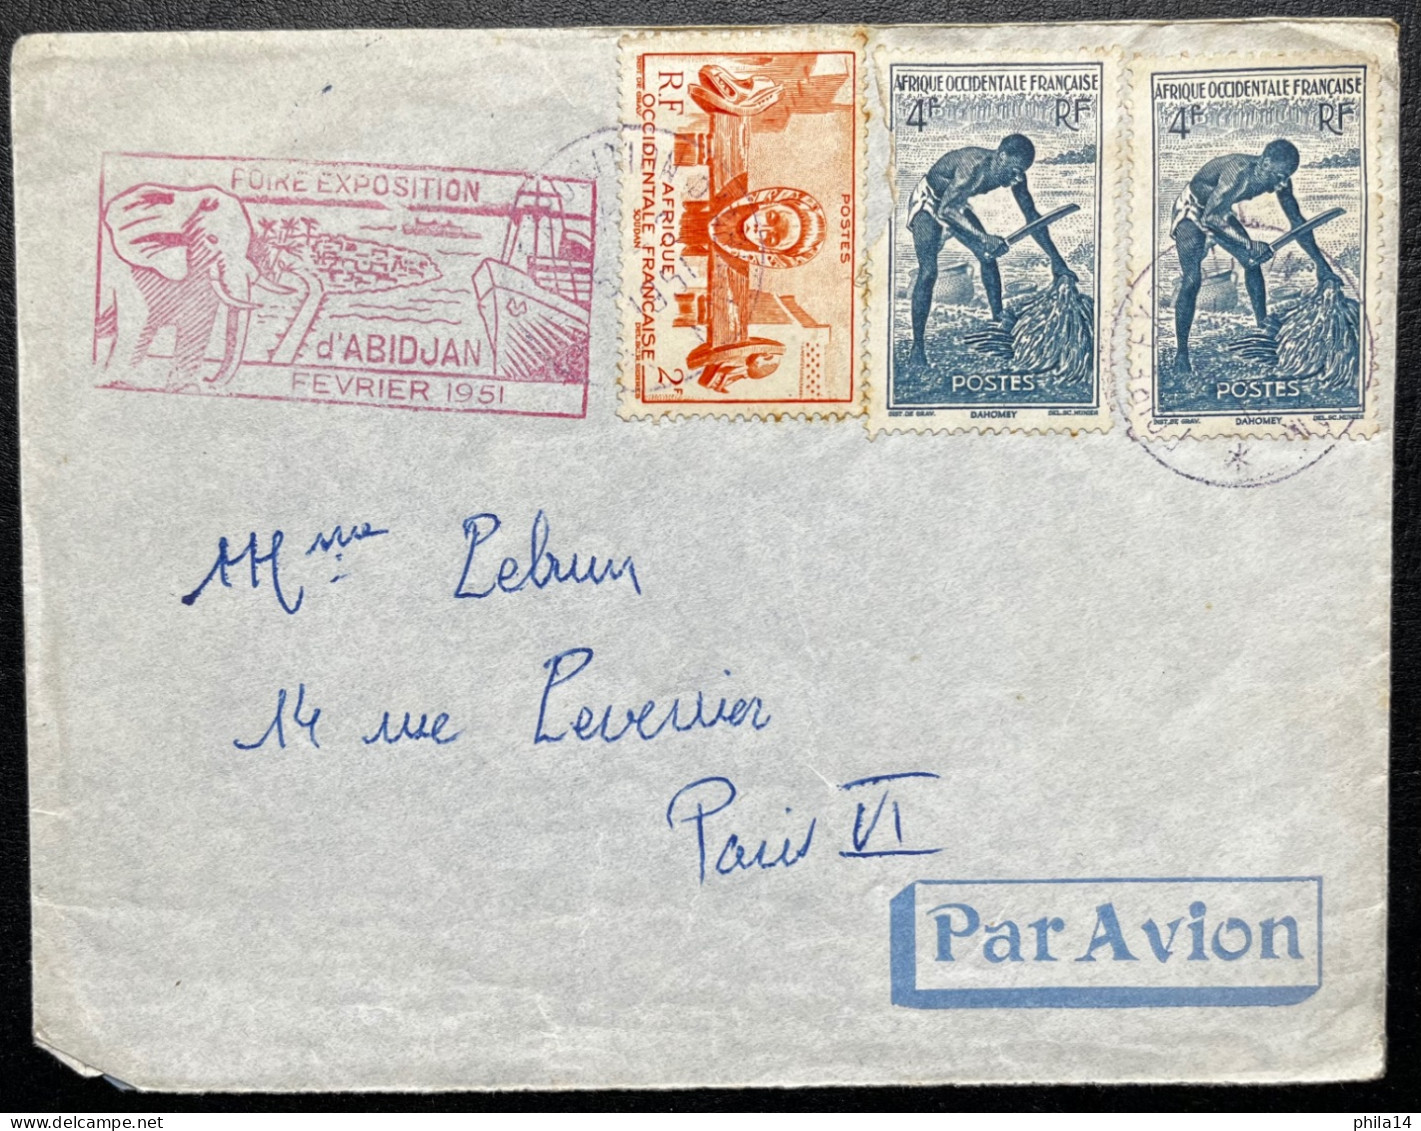 SP ENVELOPPE SENEGAL ABIDJAN POUR PARIS / 1951 FOIRE EXPOSITION ABIDJAN - Covers & Documents